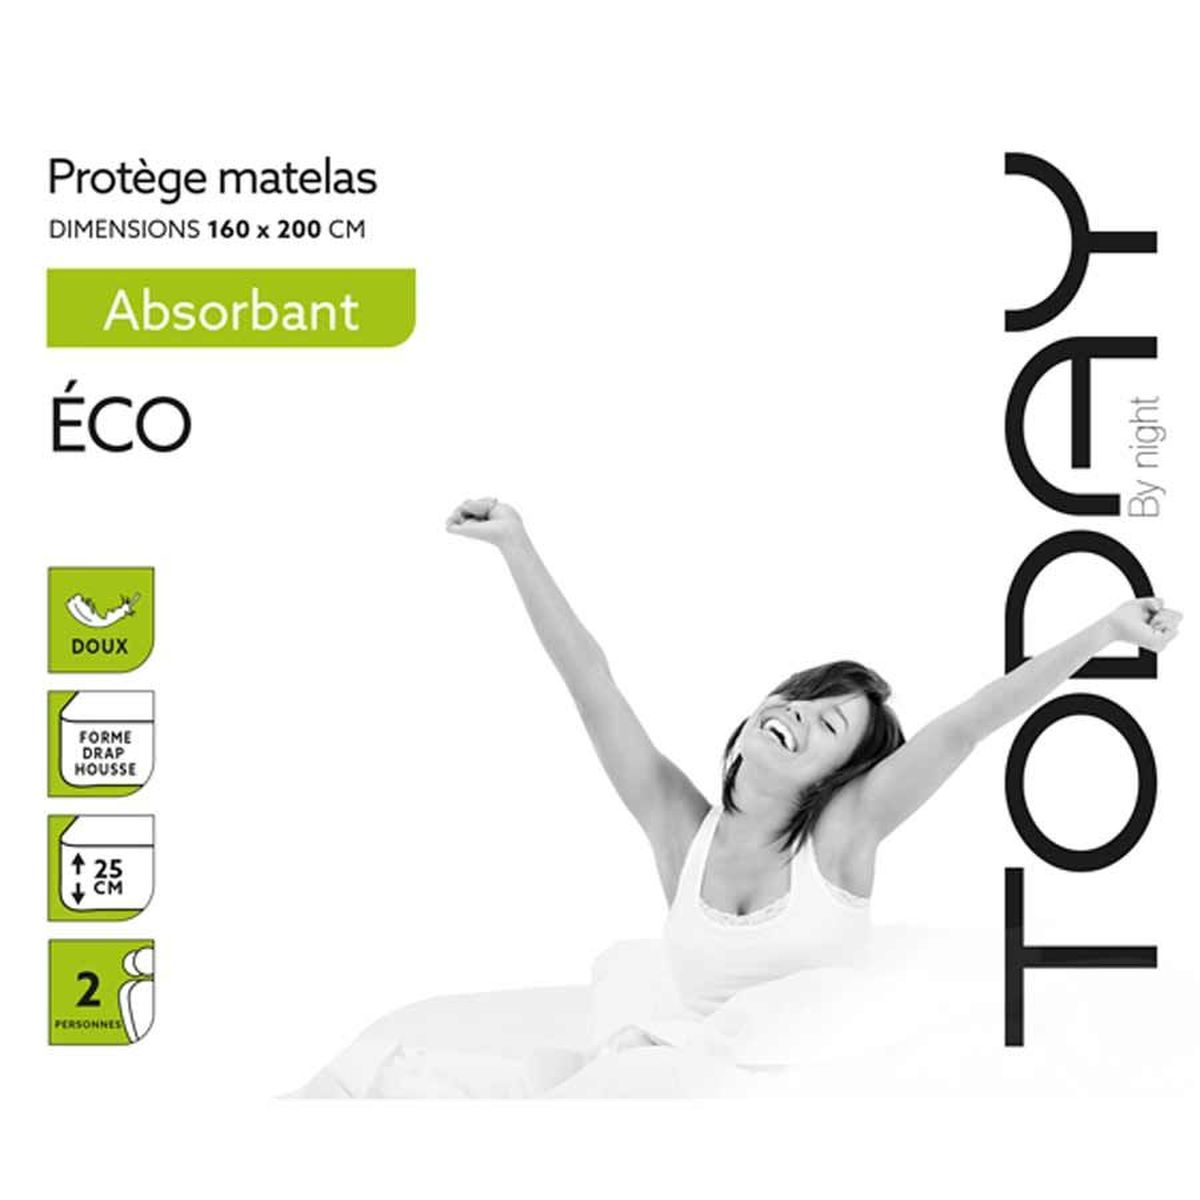 Cotton mattress 160 x 200 x 25 cm - Eco range